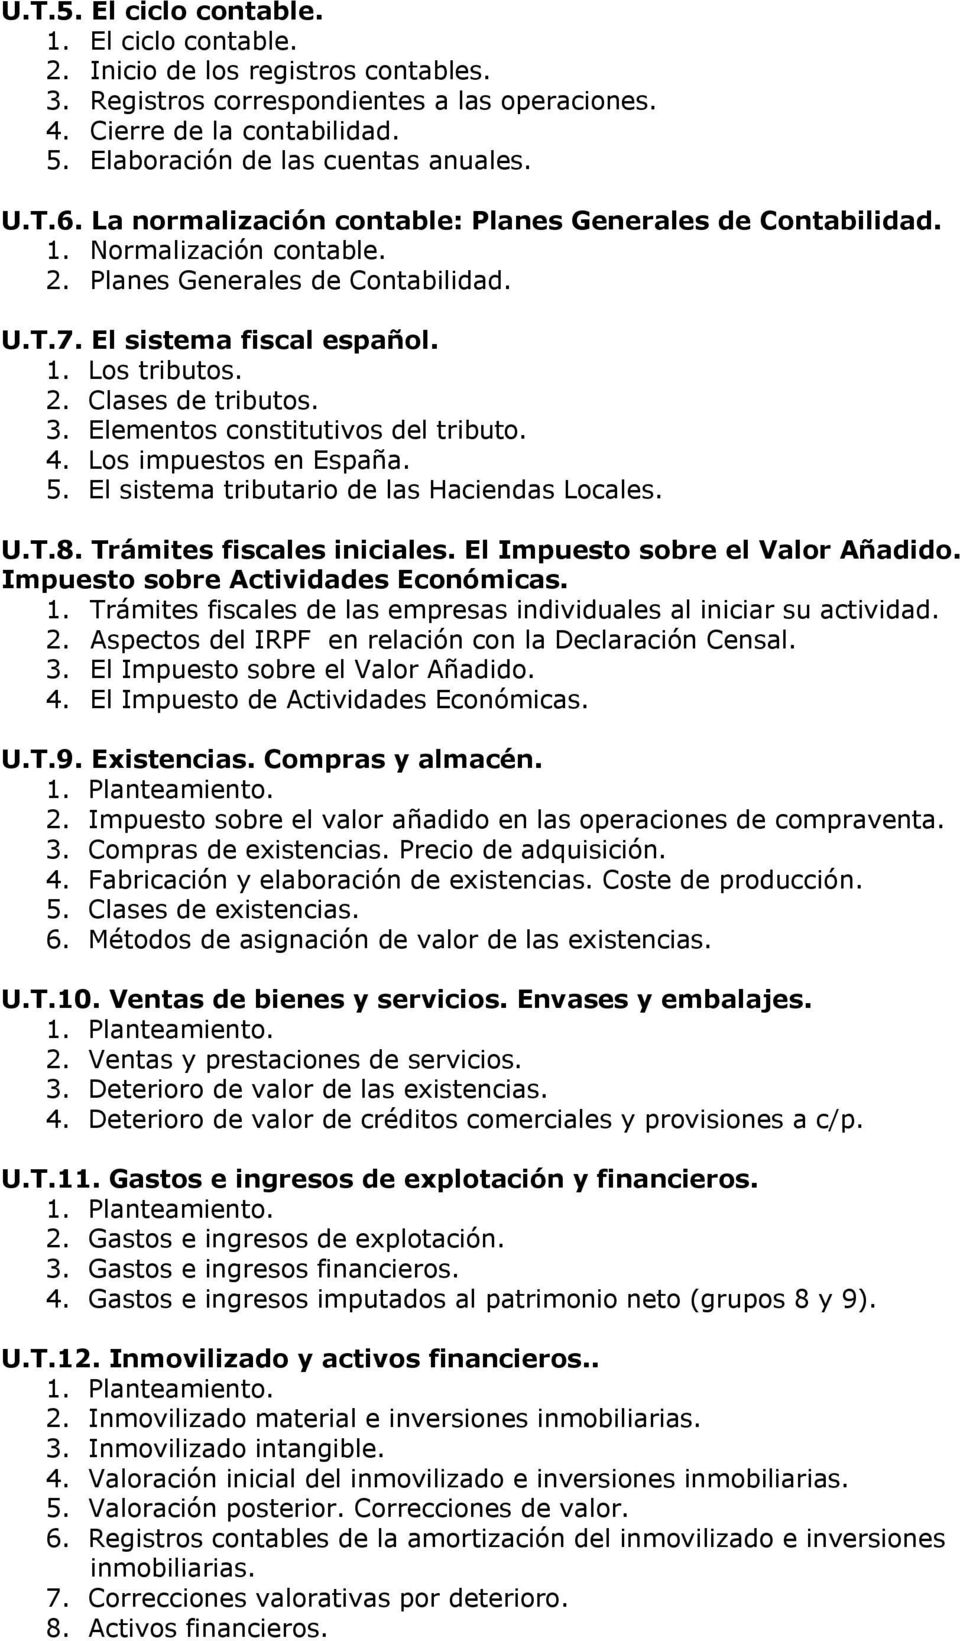 El sistema fiscal español. 1. Los tributos. 2. Clases de tributos. 3. Elementos constitutivos del tributo. 4. Los impuestos en España. 5. El sistema tributario de las Haciendas Locales. U.T.8.